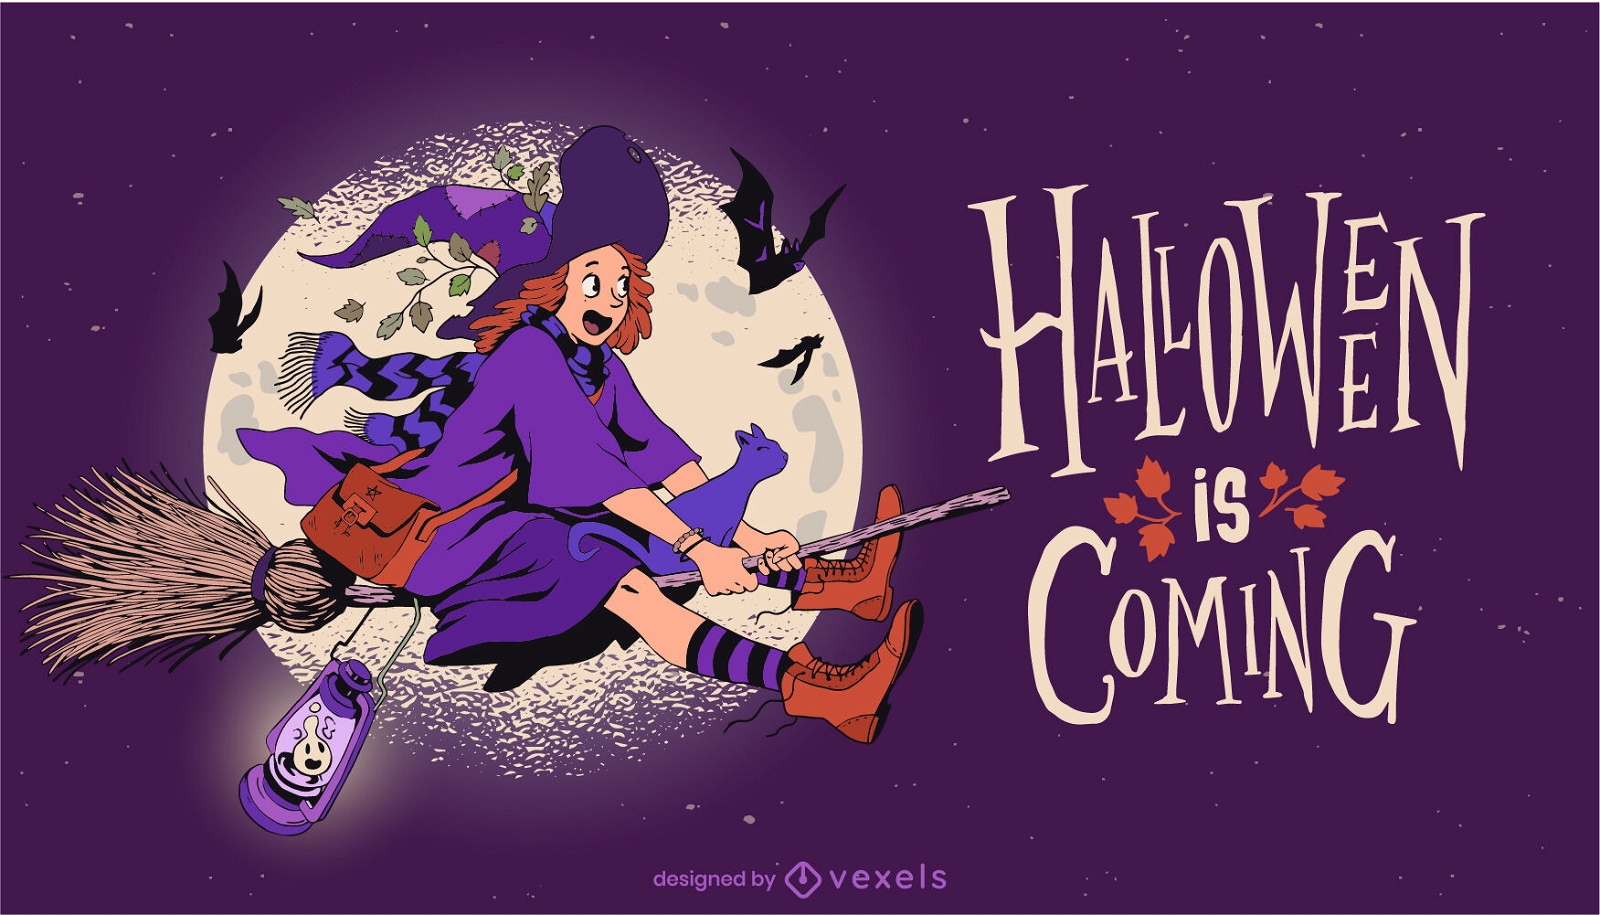 Hexe fliegende Halloween-Feiertagsillustration